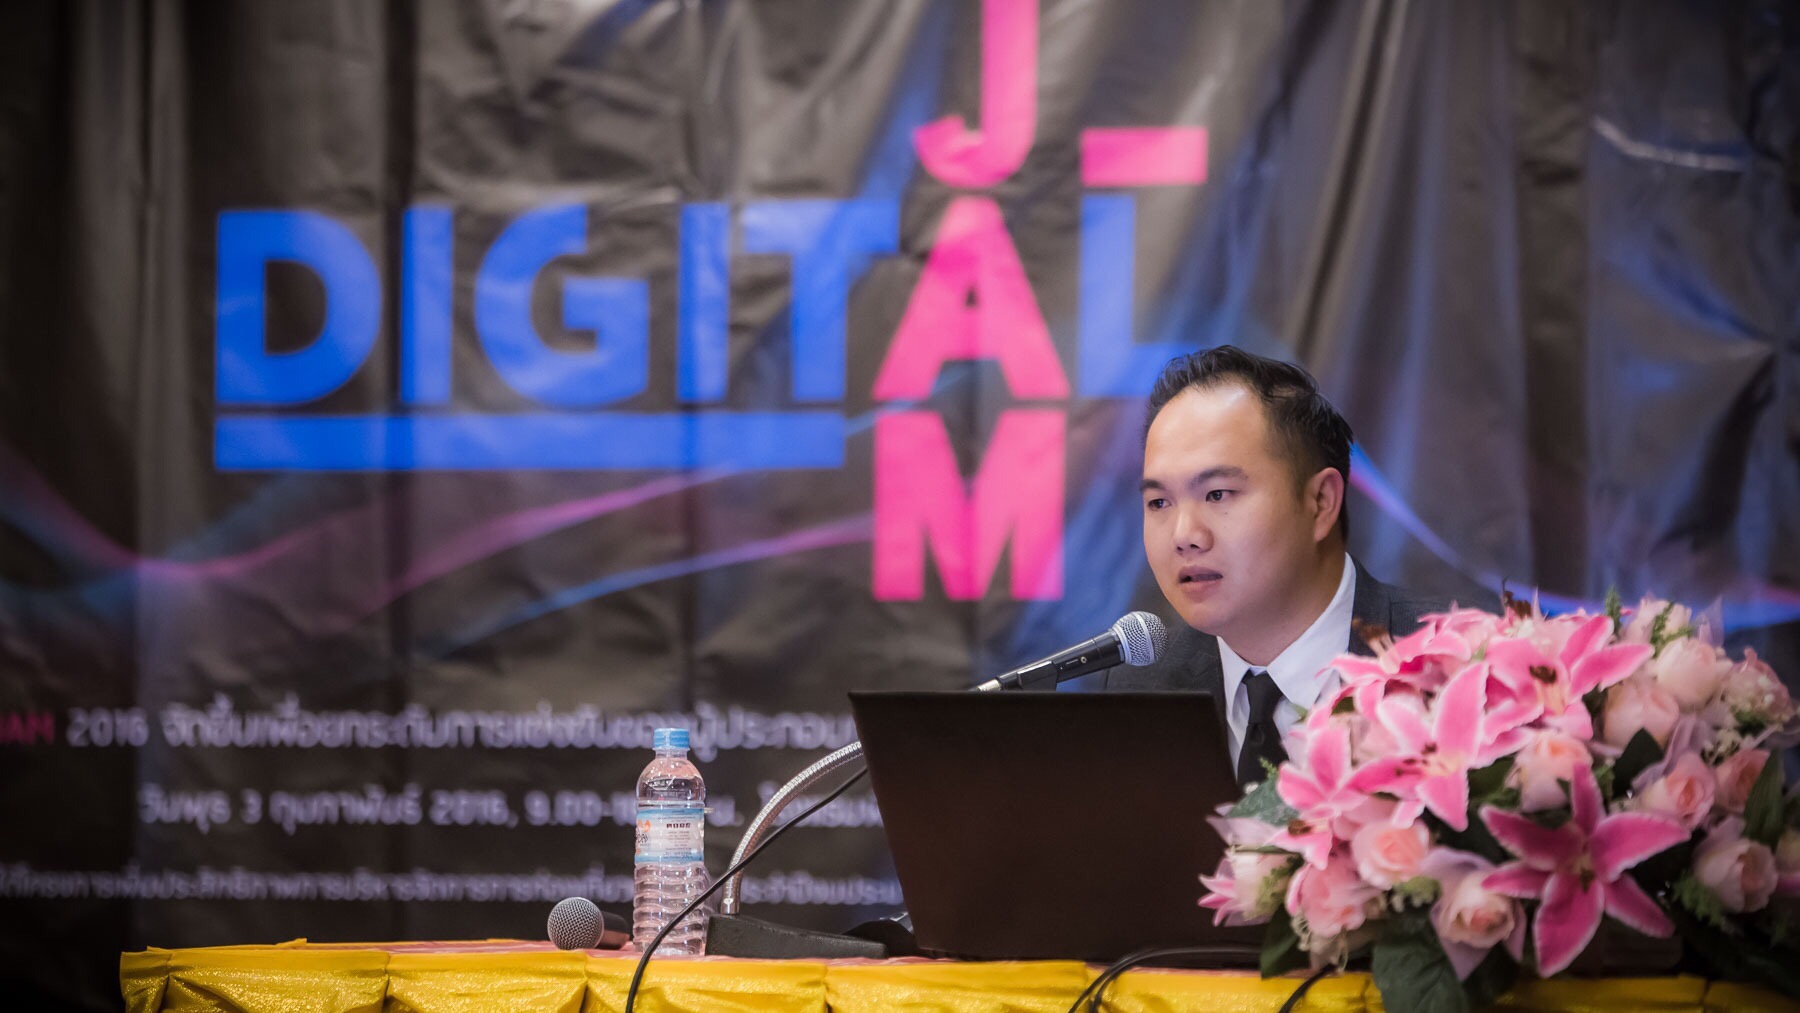 หลักสูตร Digital Jam รุ่น 1 จ.เชียงราย จัดโดย กระทรวงการท่องเที่ยวและกีฬา , หลักสูตร Digital Marketing 4.0 เพื่อธุรกิจท่องเที่ยวไทย